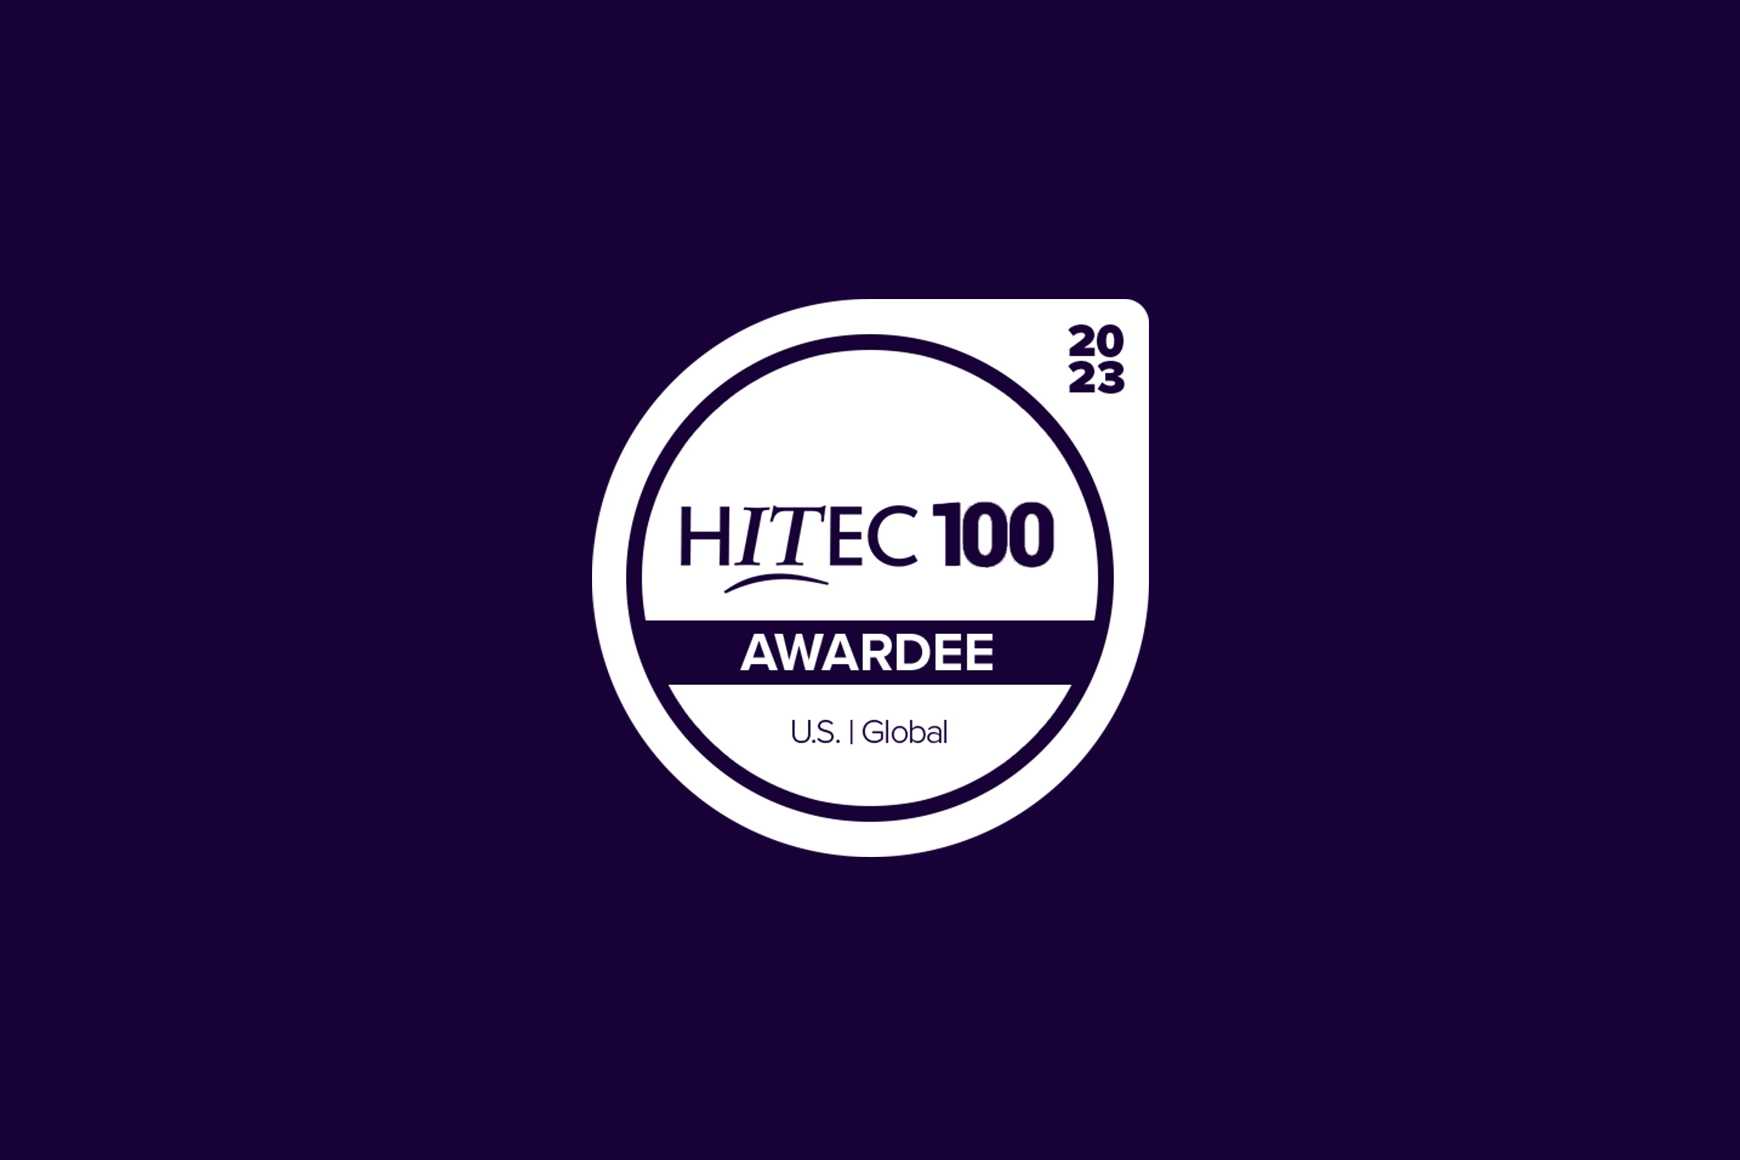 Talkdesk CEO Tiago Paiva Named to HITEC 100